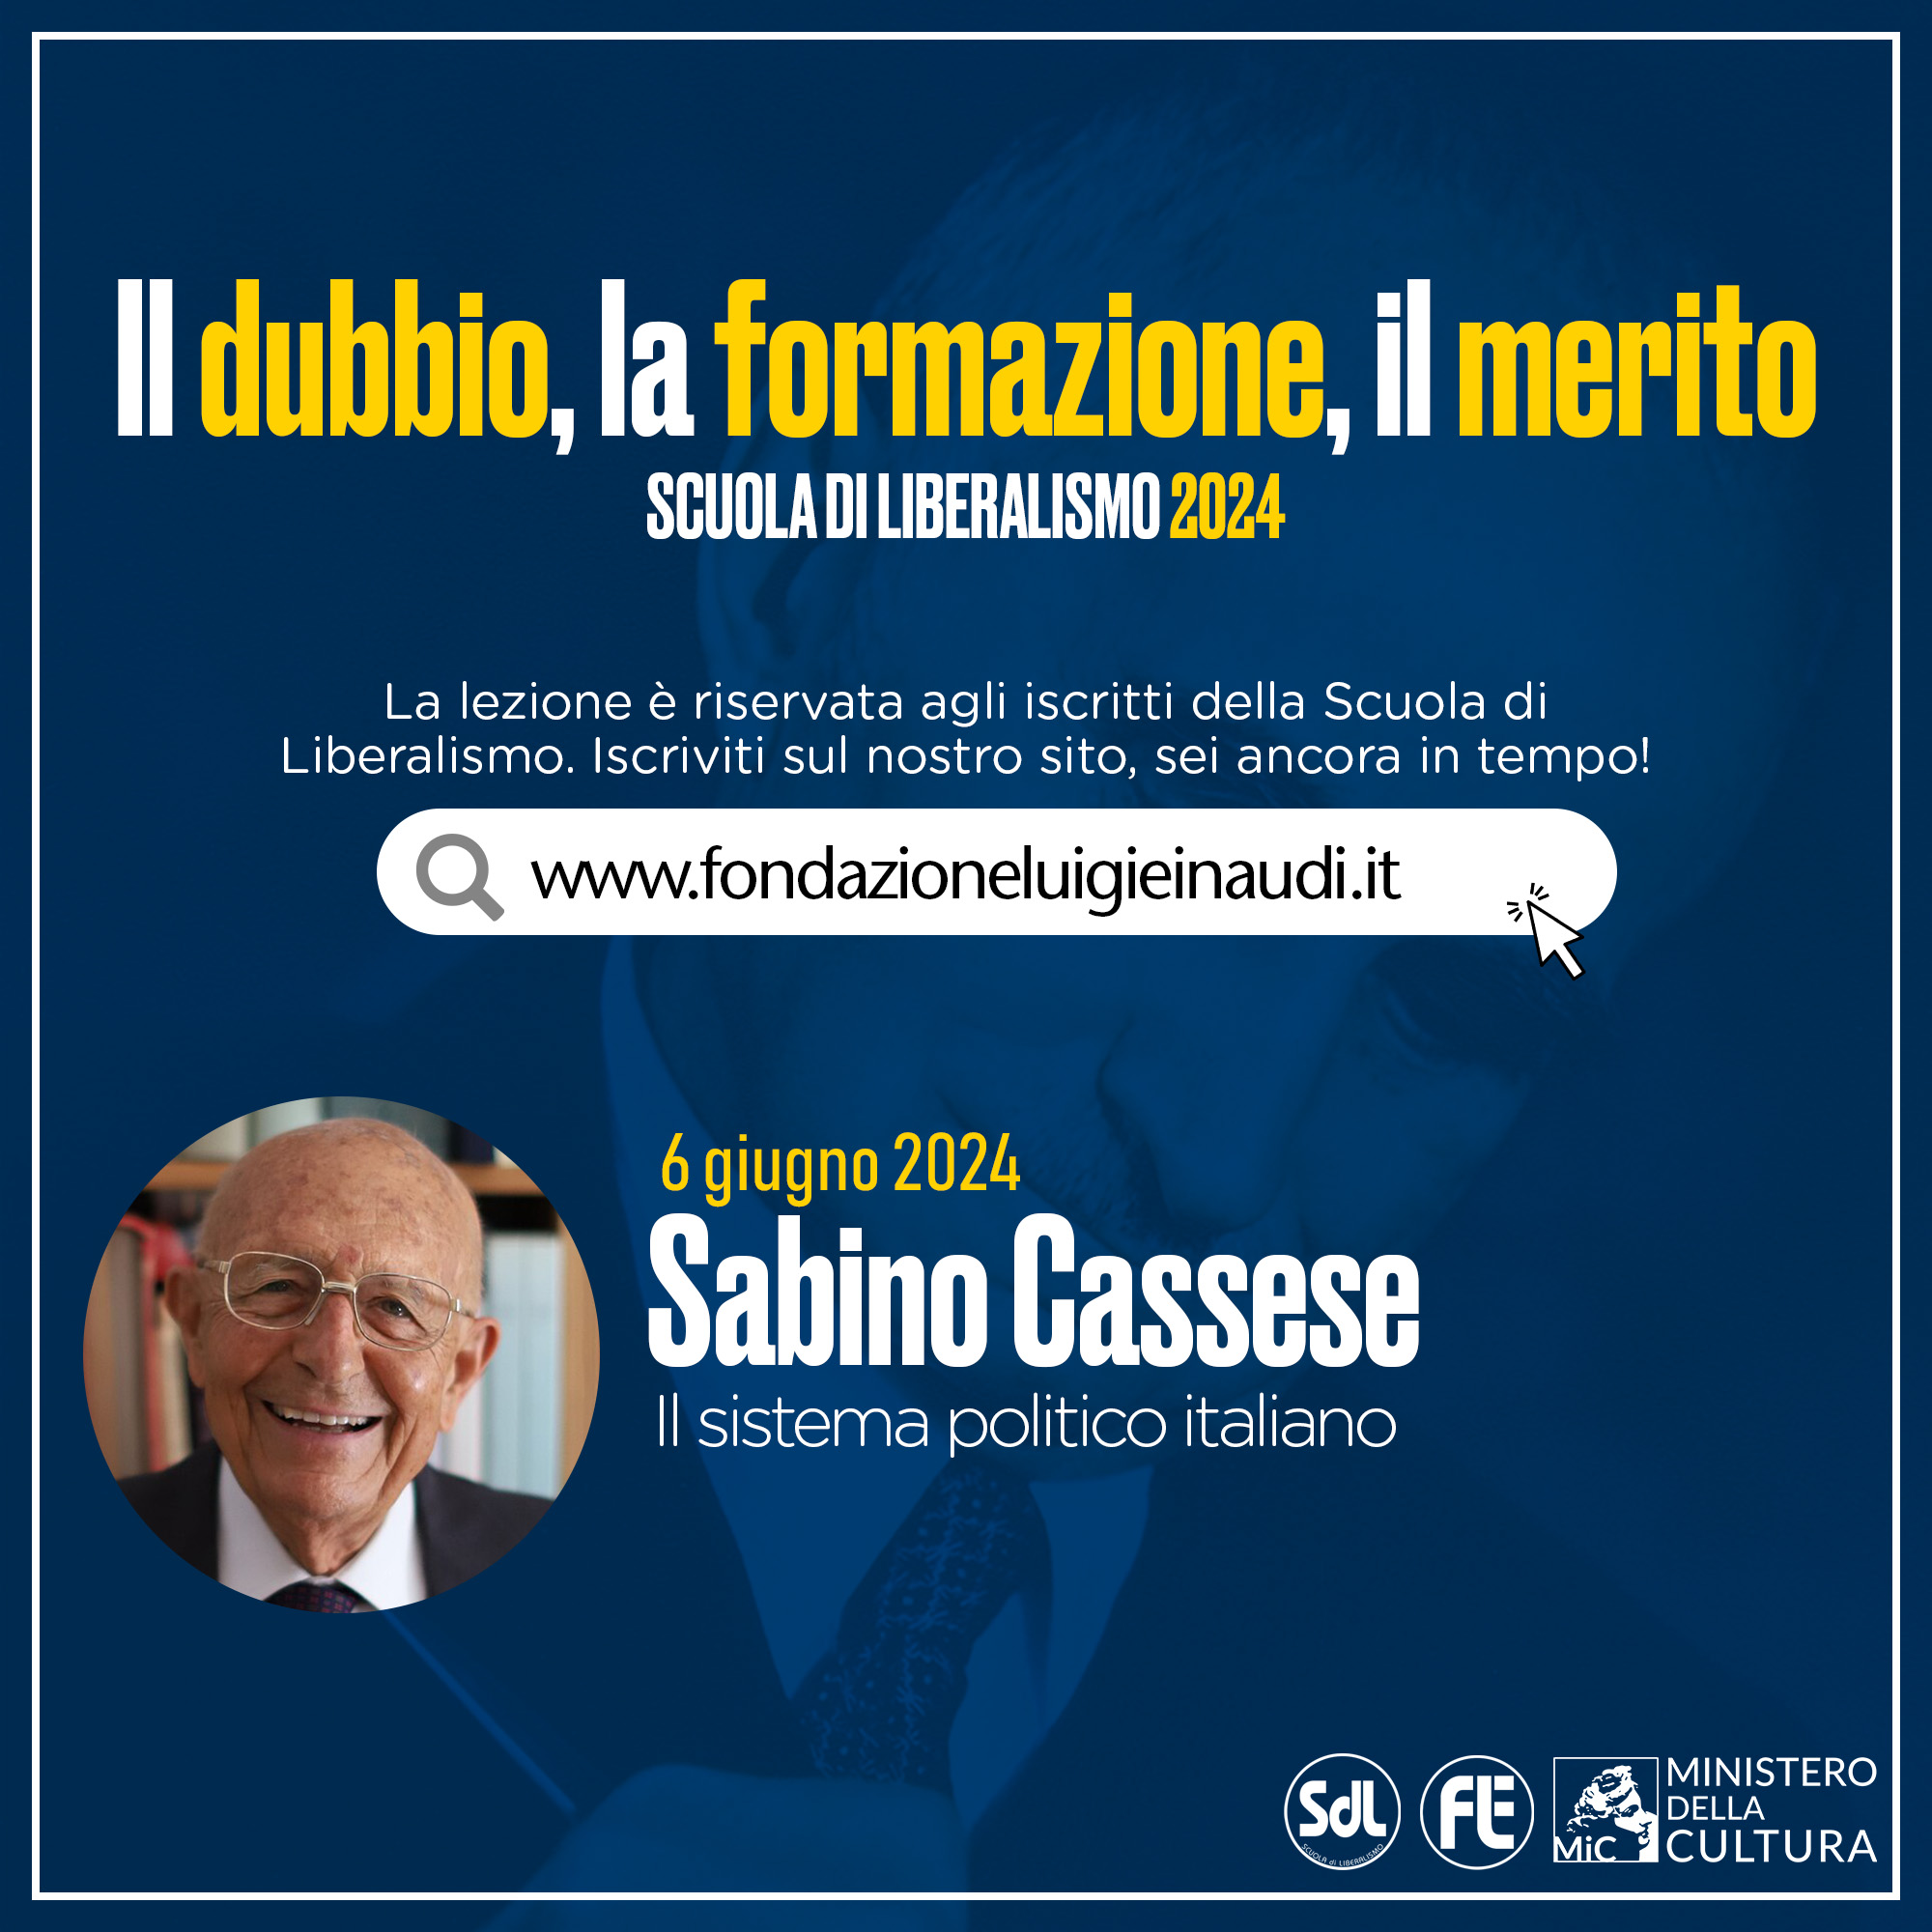 Scuola di Liberalismo 2024 – Sabino Cassese, Il sistema politico italiano